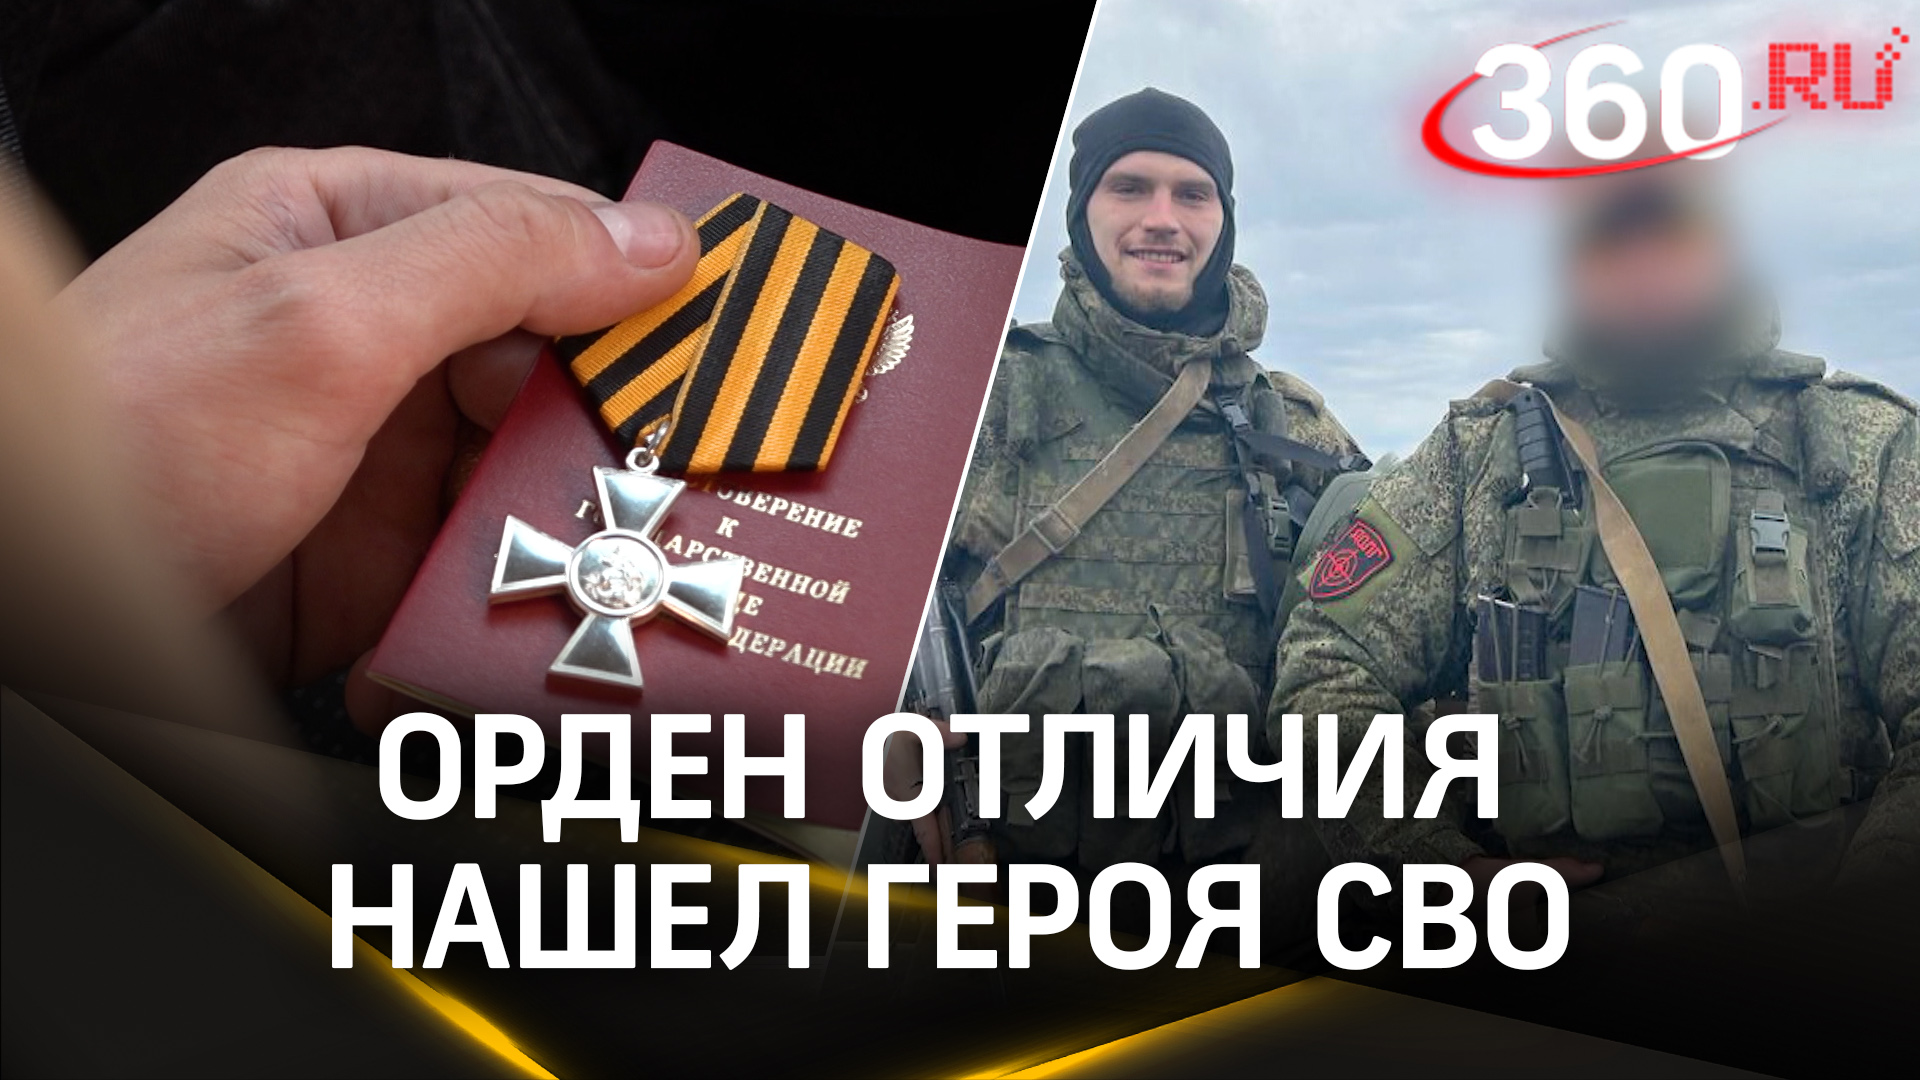 Александр Ткаченко награжден знаком отличия ордена Святого Георгия — Георгиевским крестом 4 степени